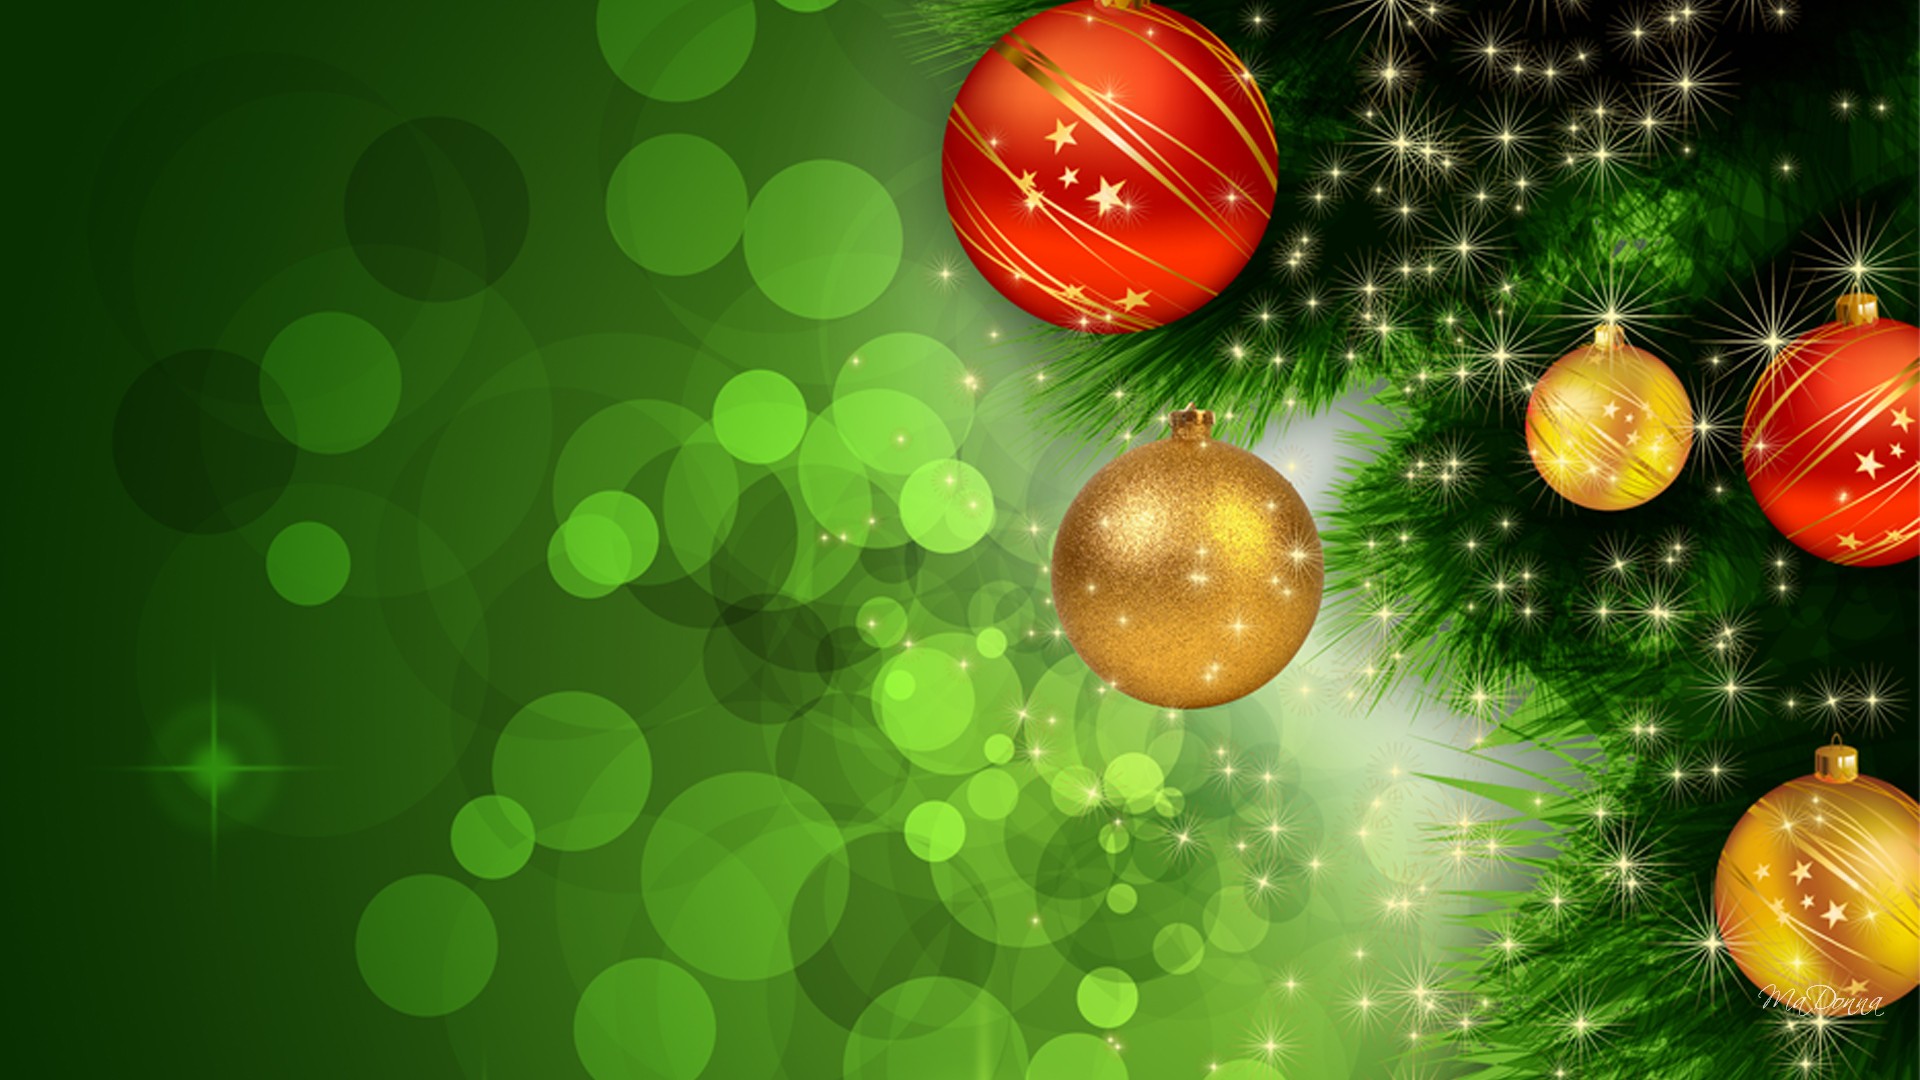 緑のクリスマスの壁紙,緑,クリスマスオーナメント,クリスマス,木,クリスマスツリー